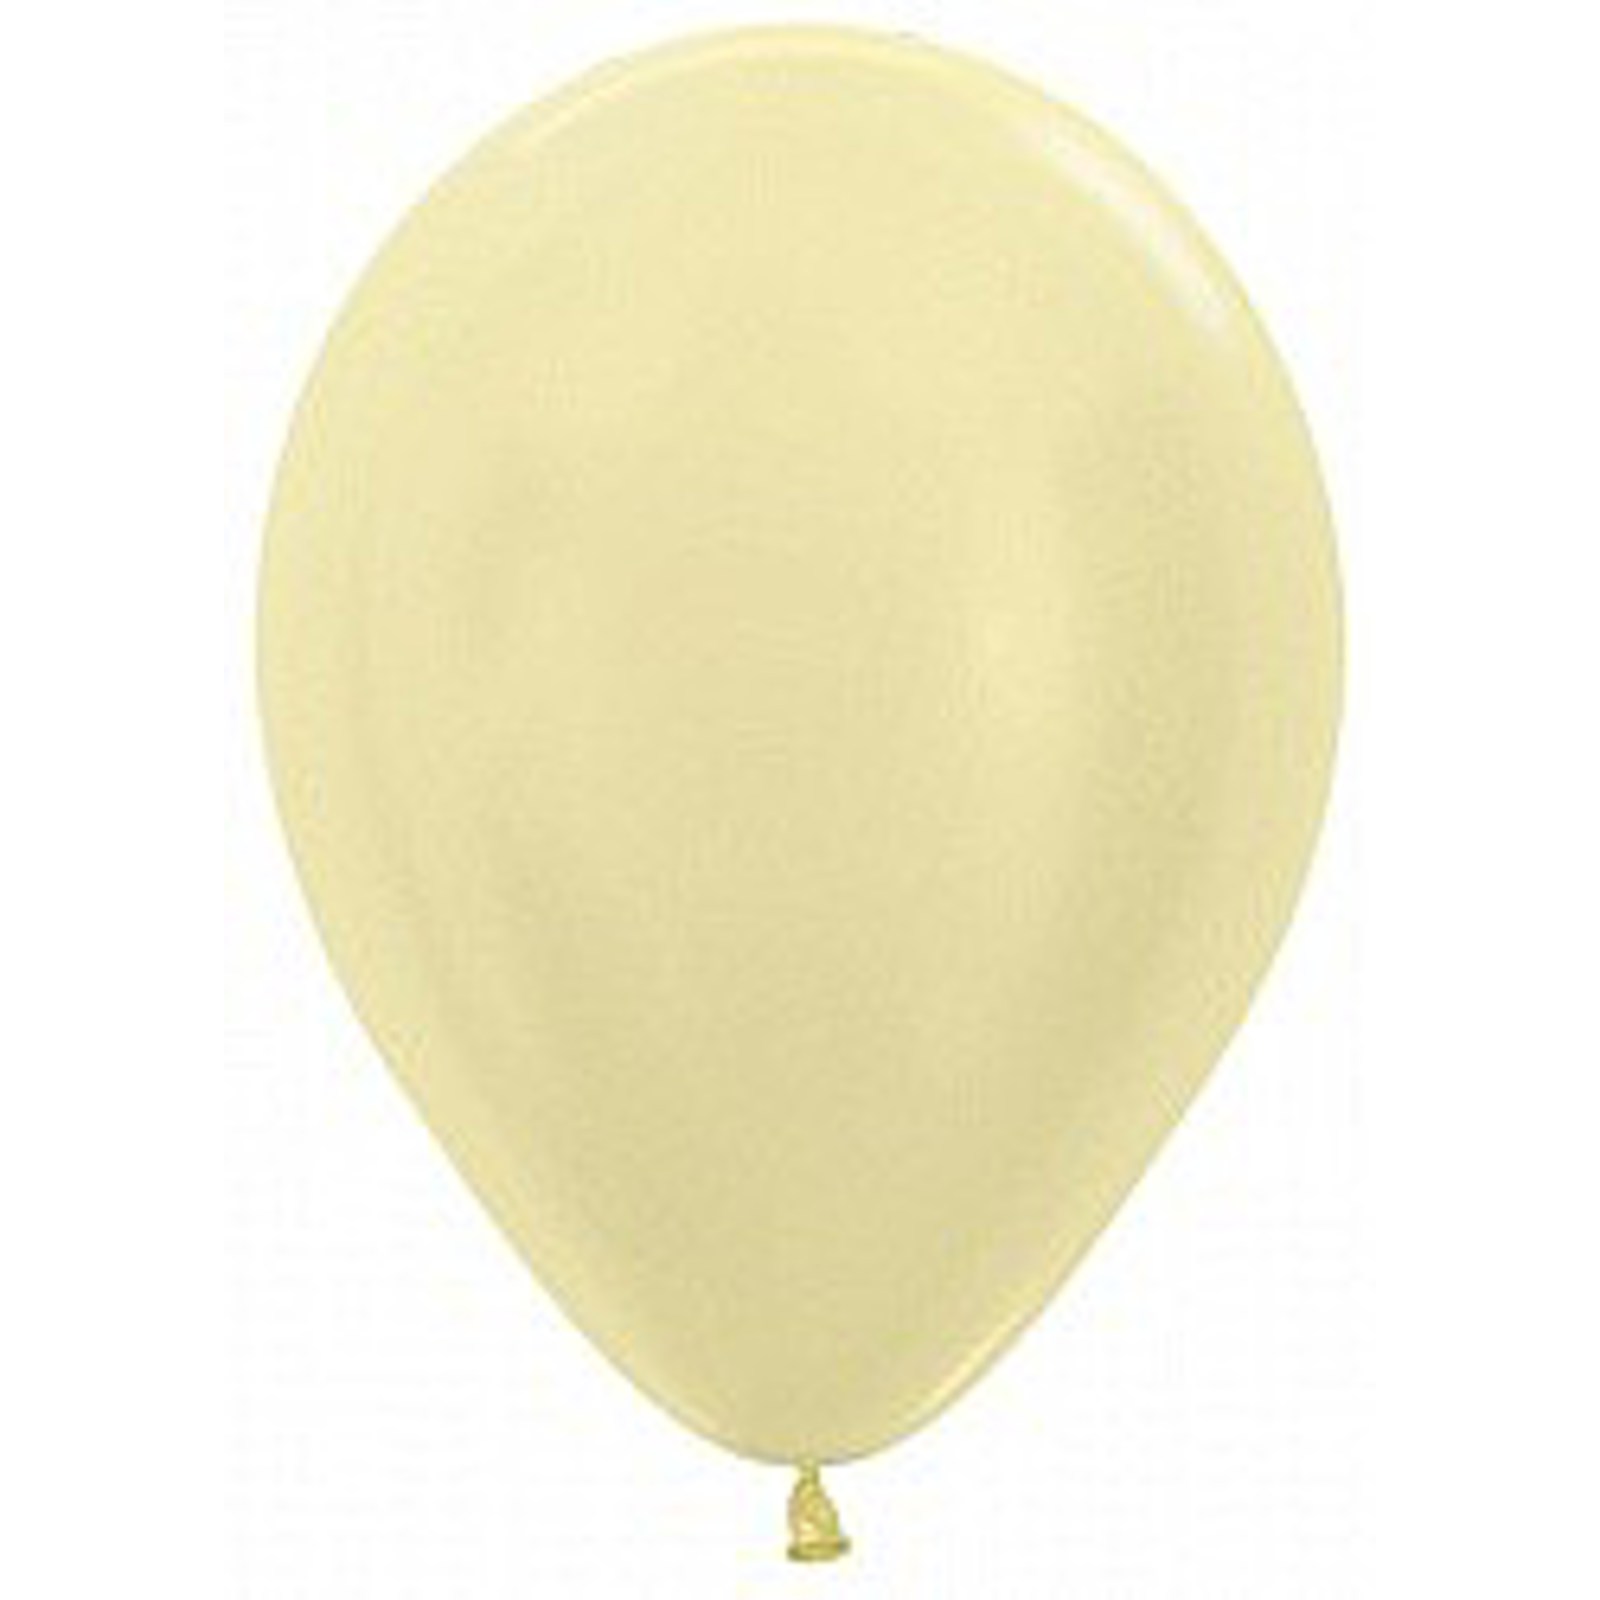 Перламутровый желтый. Sempertex 12"/30см перламутр жемчужный 100шт. Воздушный шарик. Воздушный шар "пастель". Желтый латексный шар перламутр.